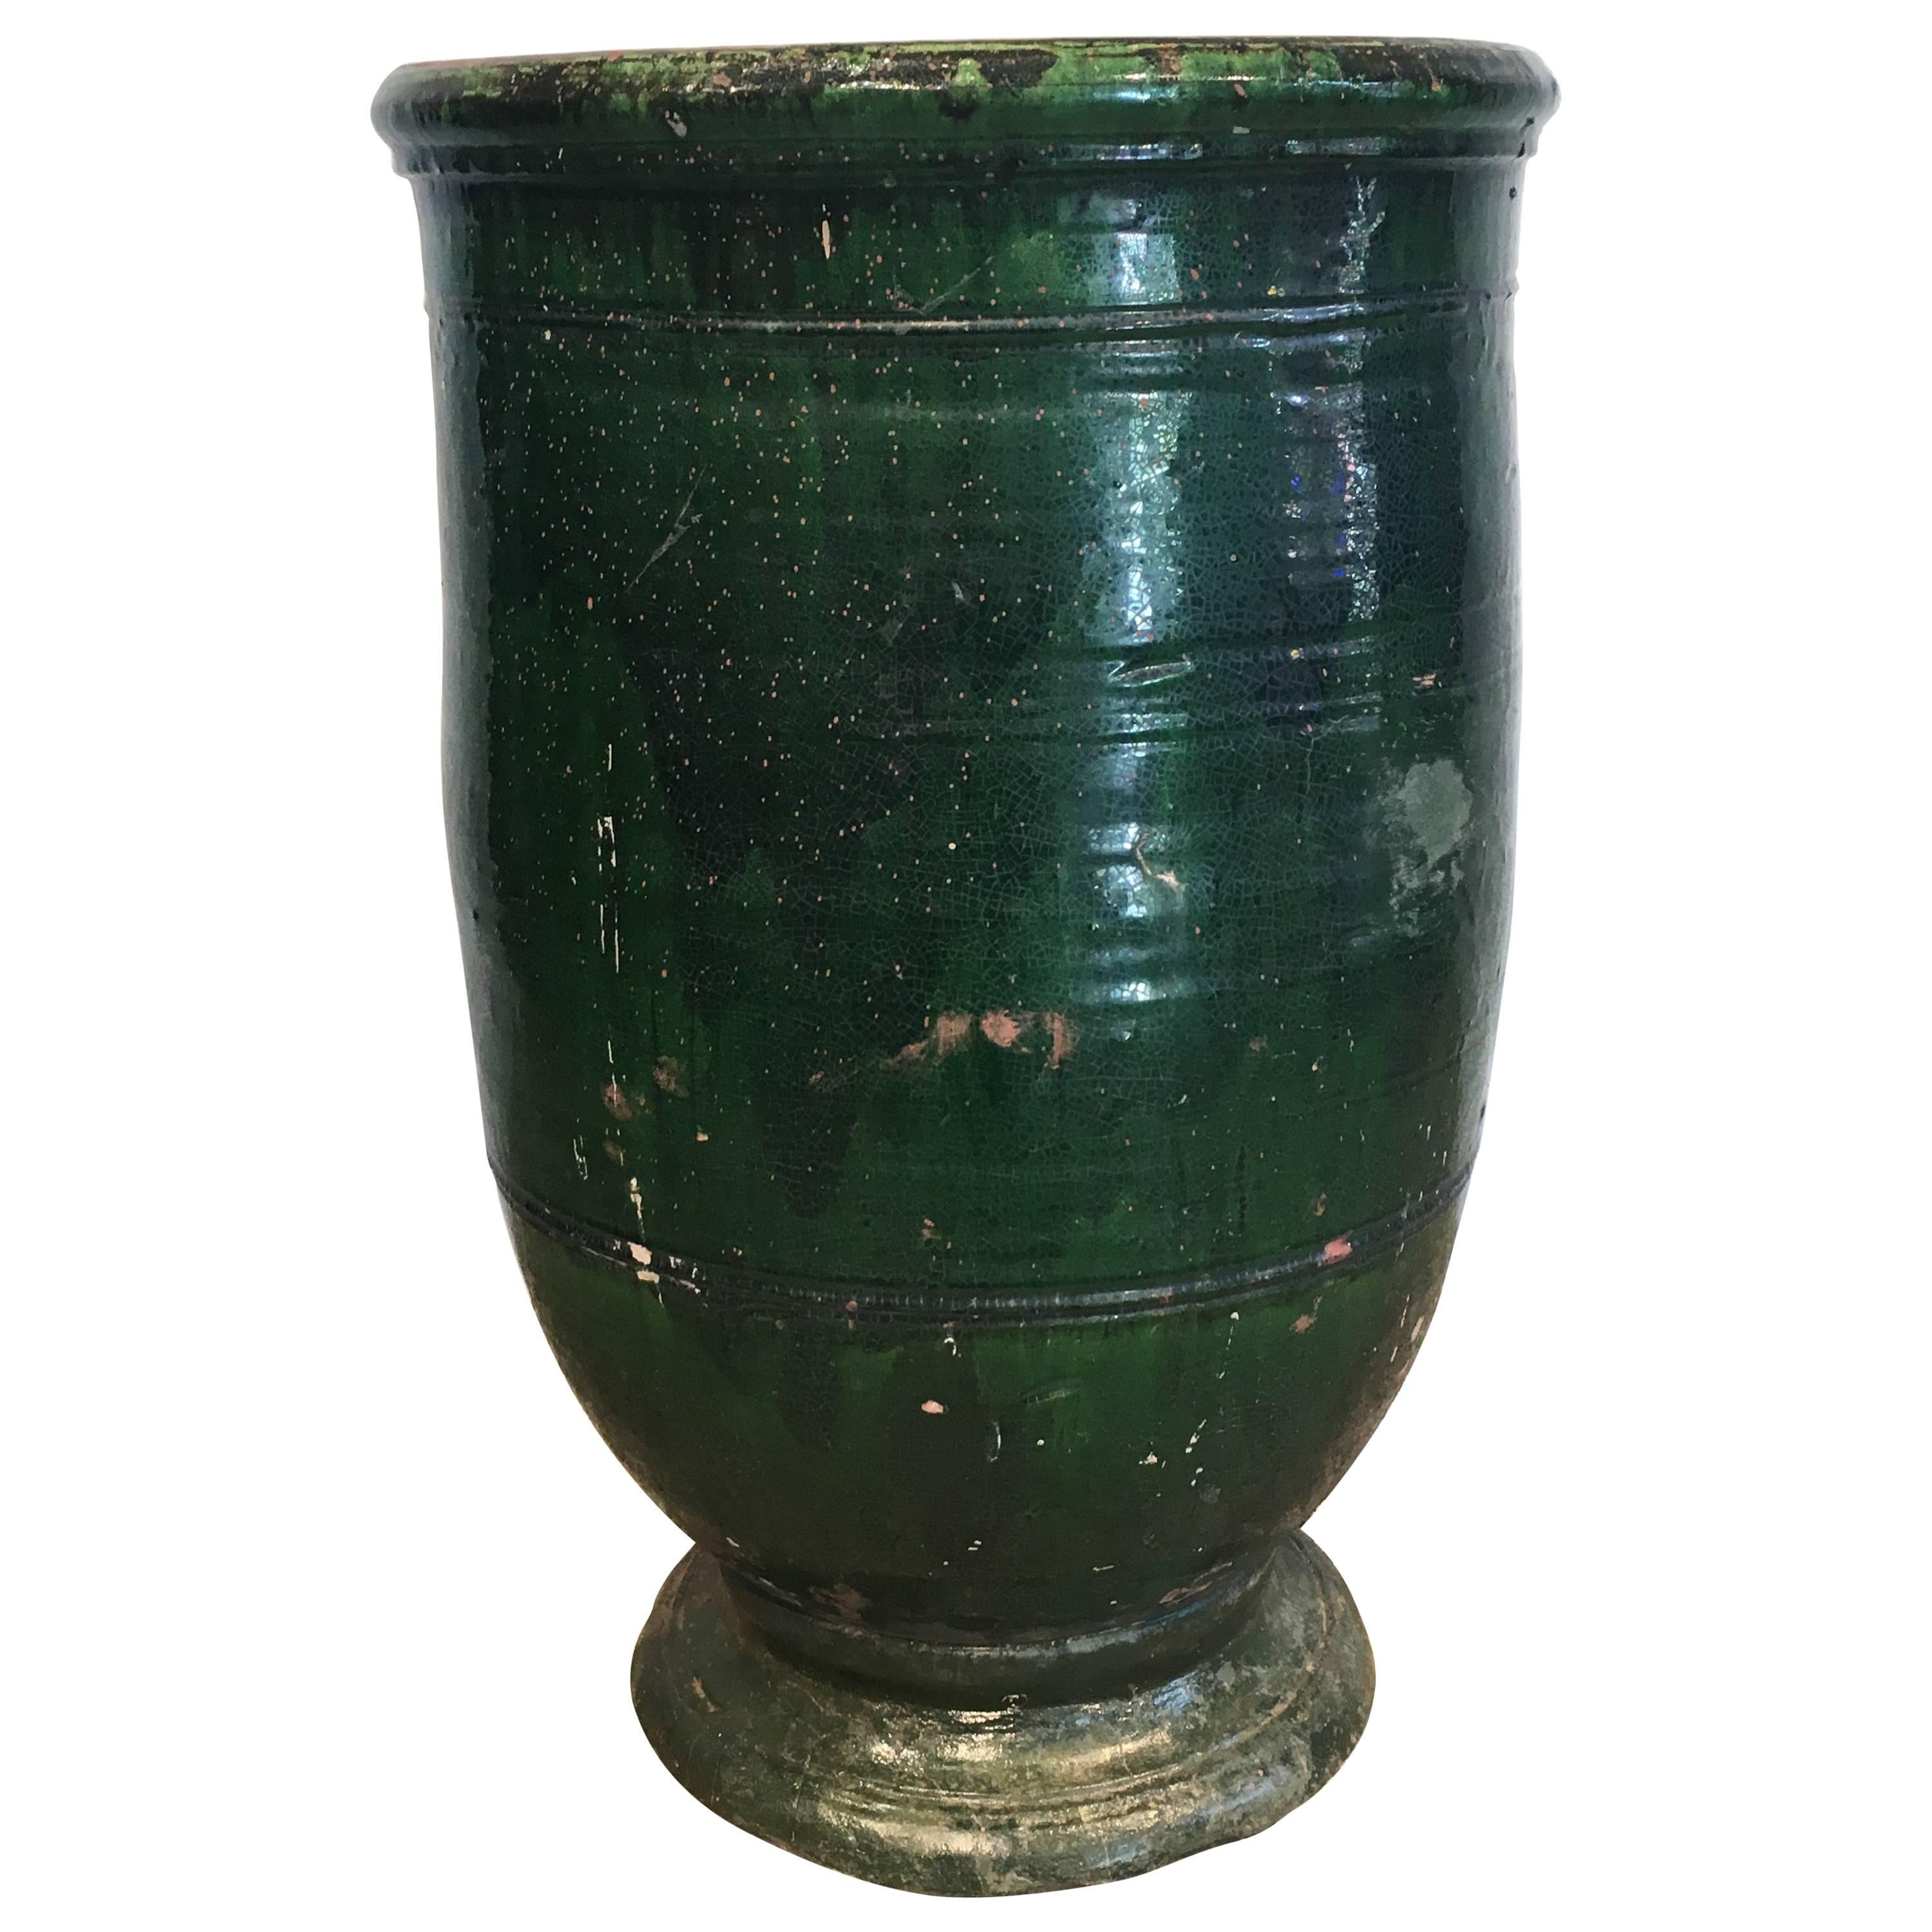 Stunning French Dark Green Glazed Terracotta Planter or Pot